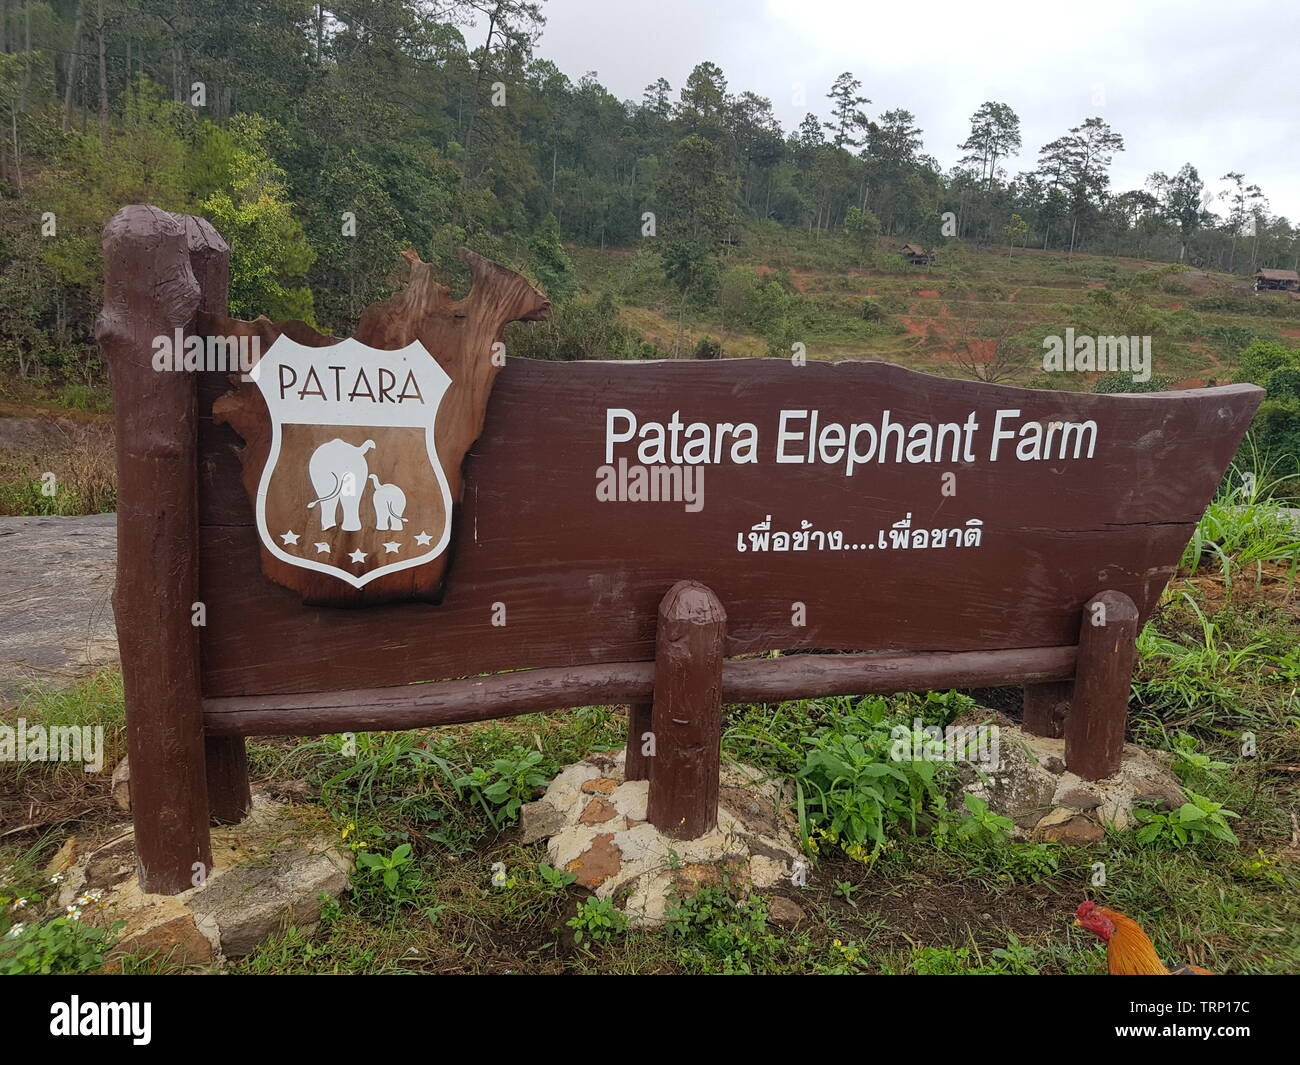 Elephants at Patara Elephant Farm, Chiang Mai, Thailand Stock Photo